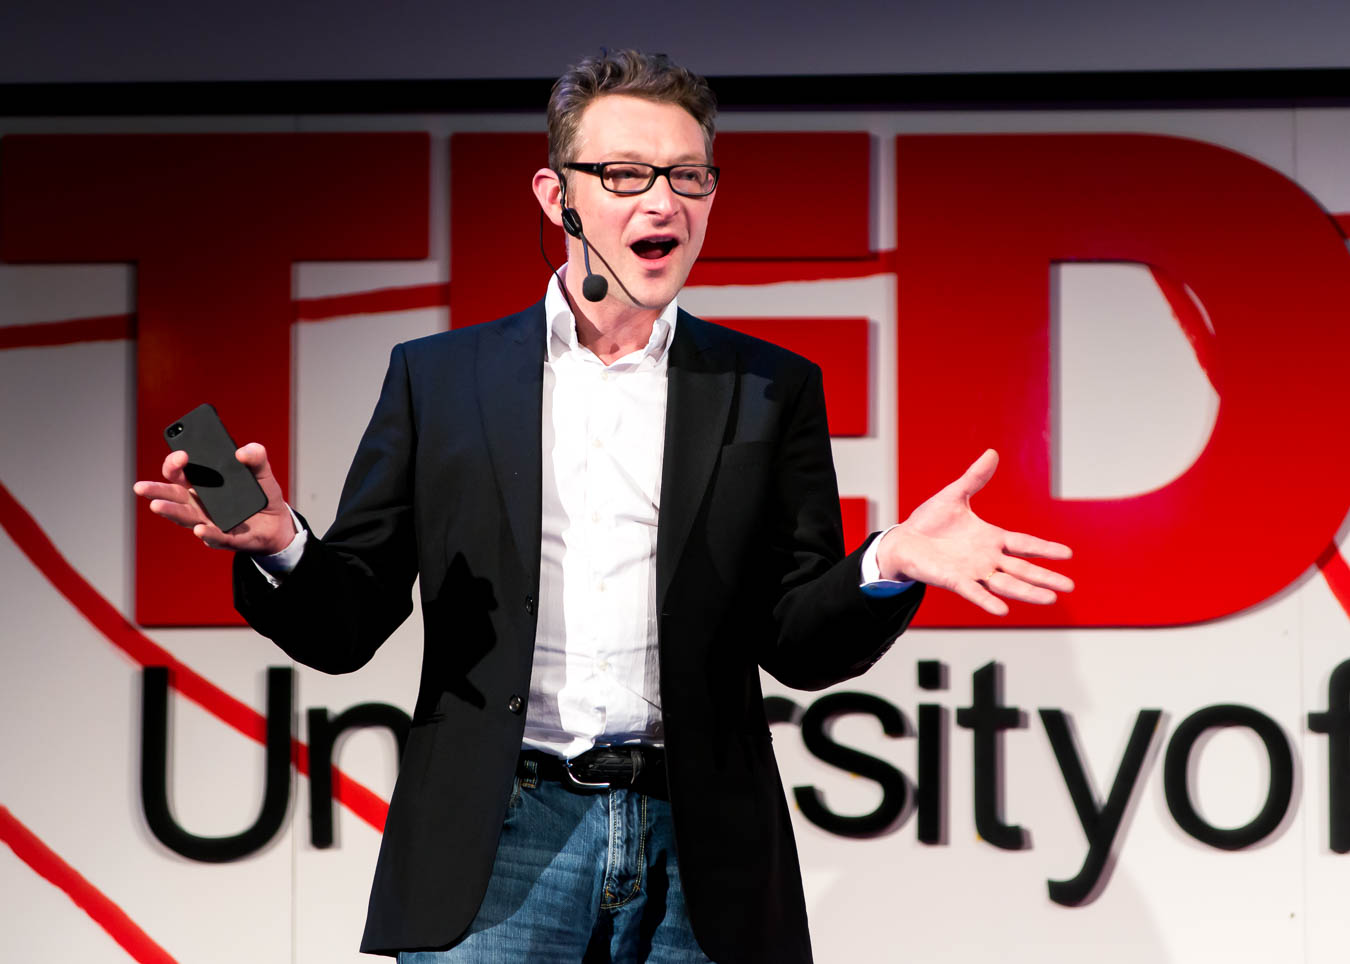 Speaker at TEDx Edinburgh